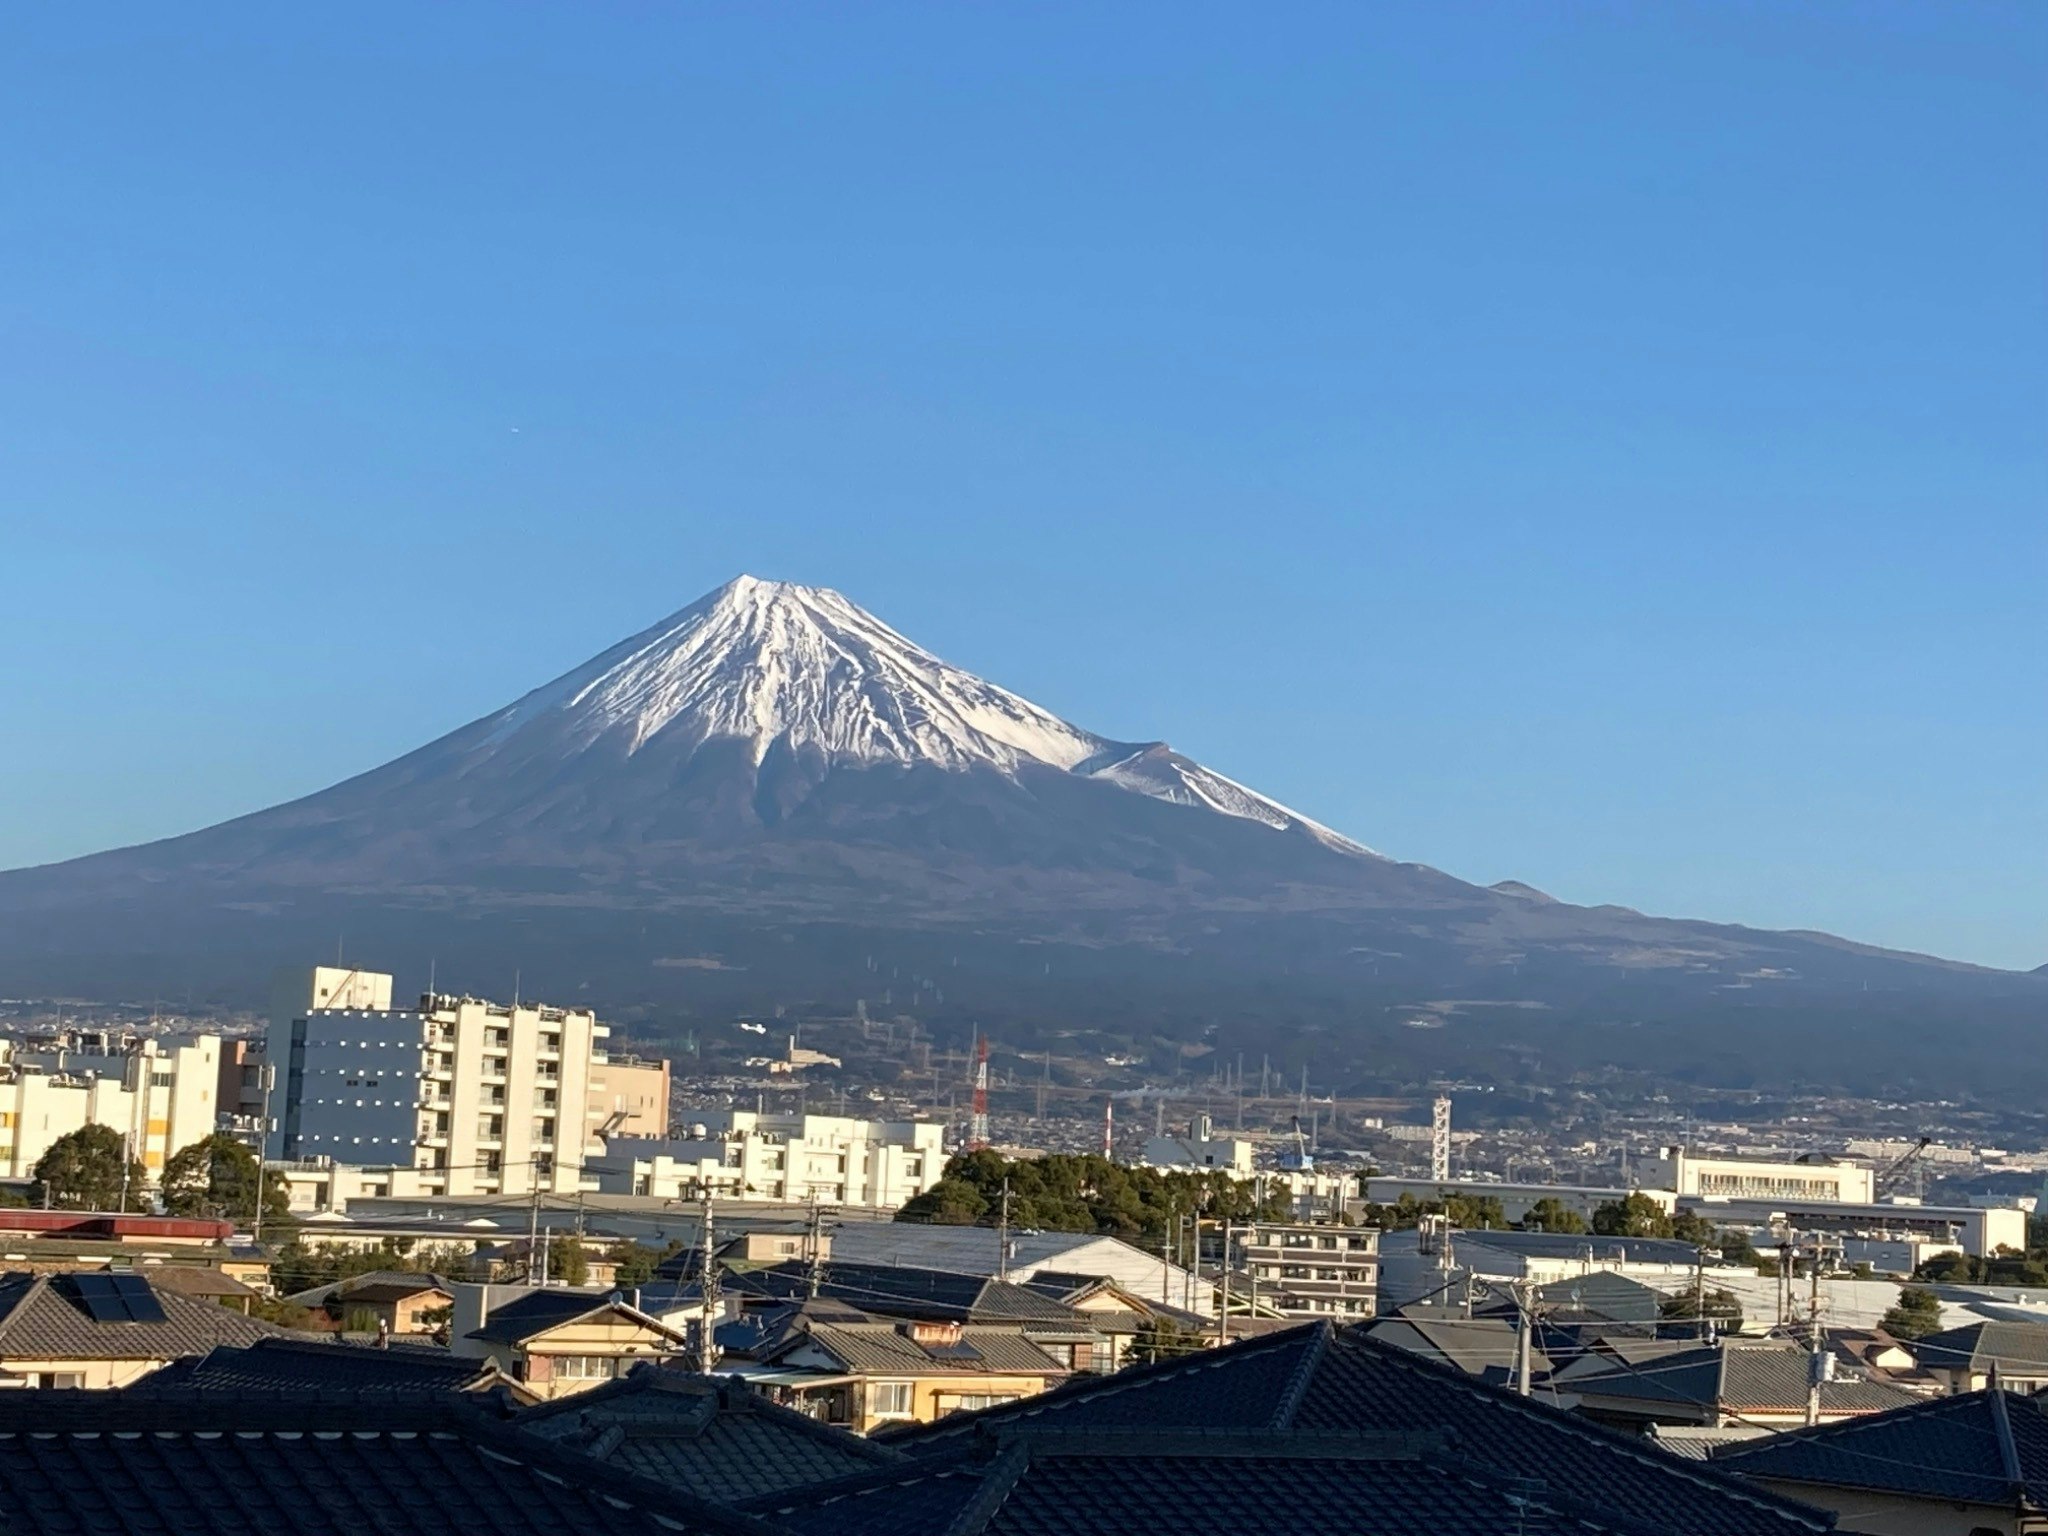 令和6年3/9新規オープン! オーナー居住型民泊施設 メゾネットタイプ 富士山ビューのツインルーム